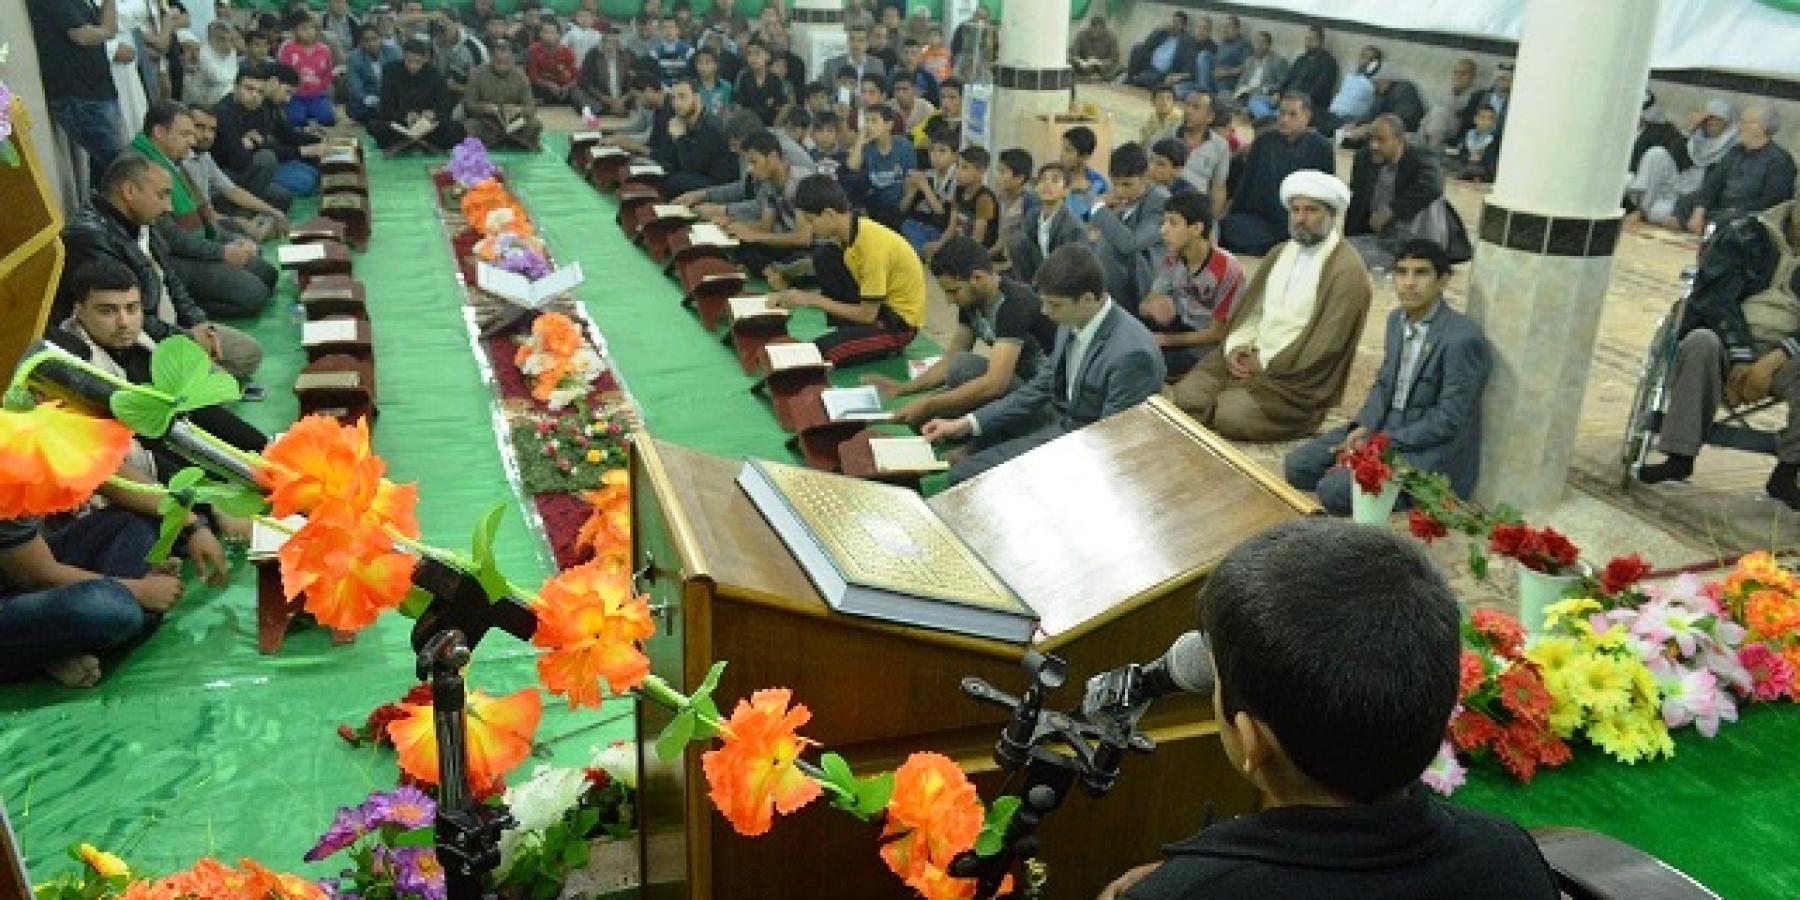 العتبة العلوية المقدسة تقيم محفلاً قرآنياً في الديوانية بمناسبة افتتاح دار للقرآن الكريم في المحافظة